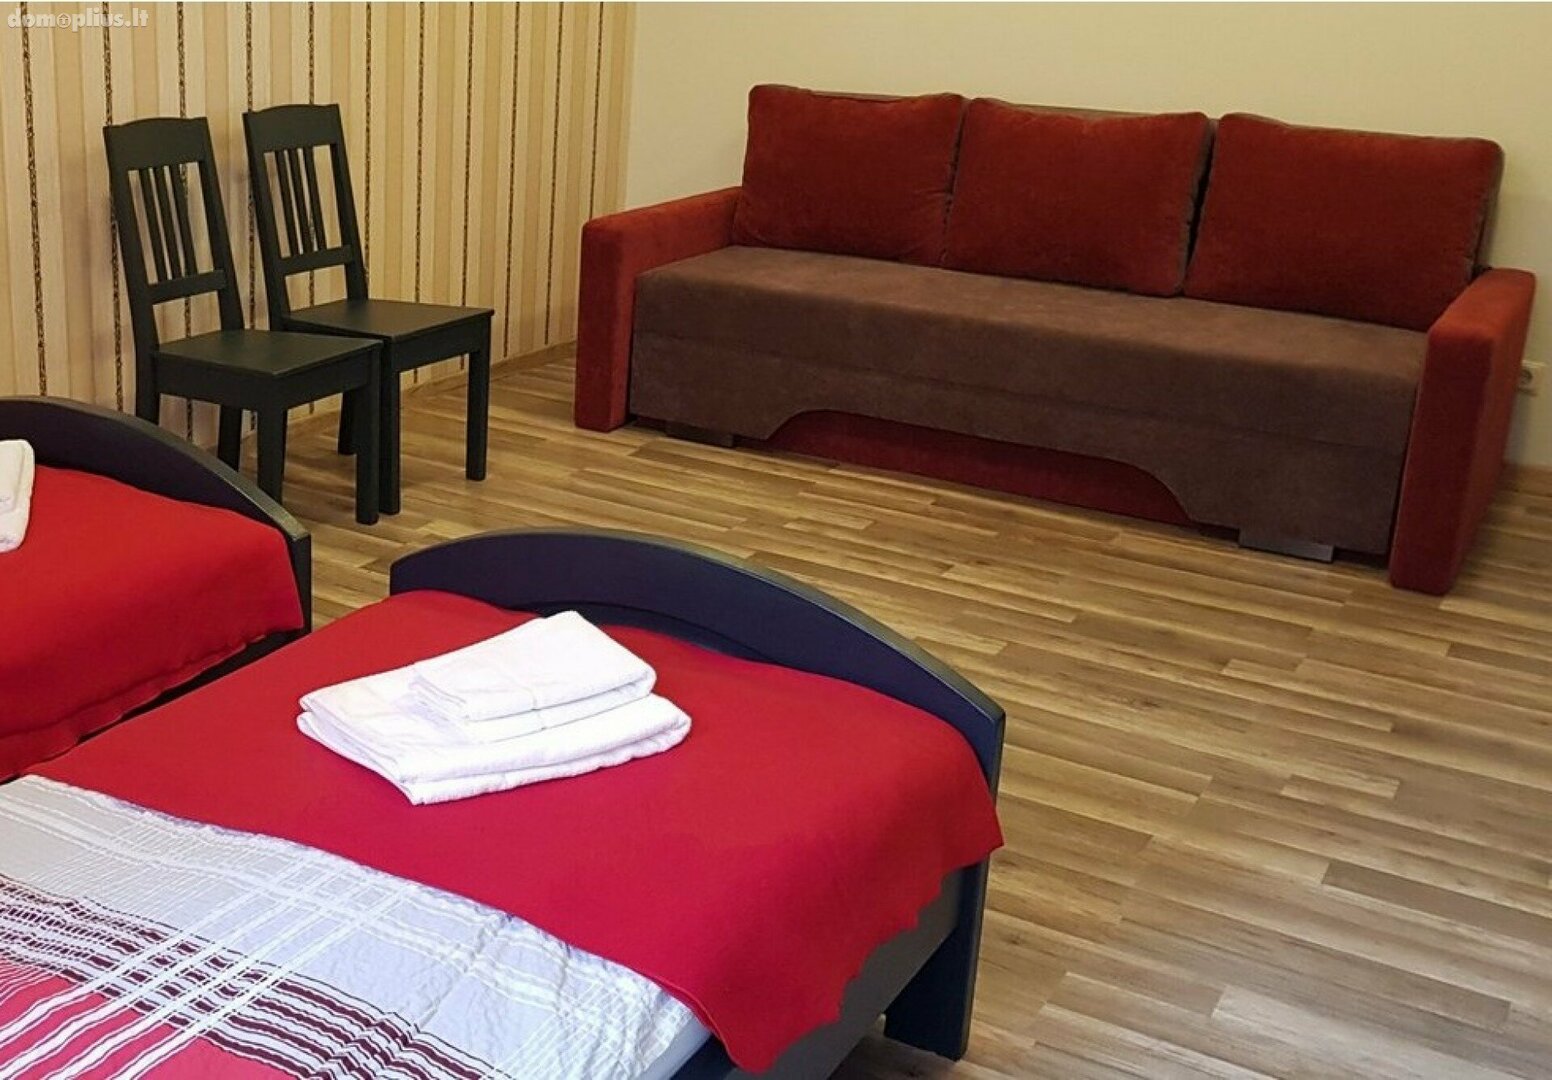 Продается 4 комнатная квартира Palangoje, Kretingos g.